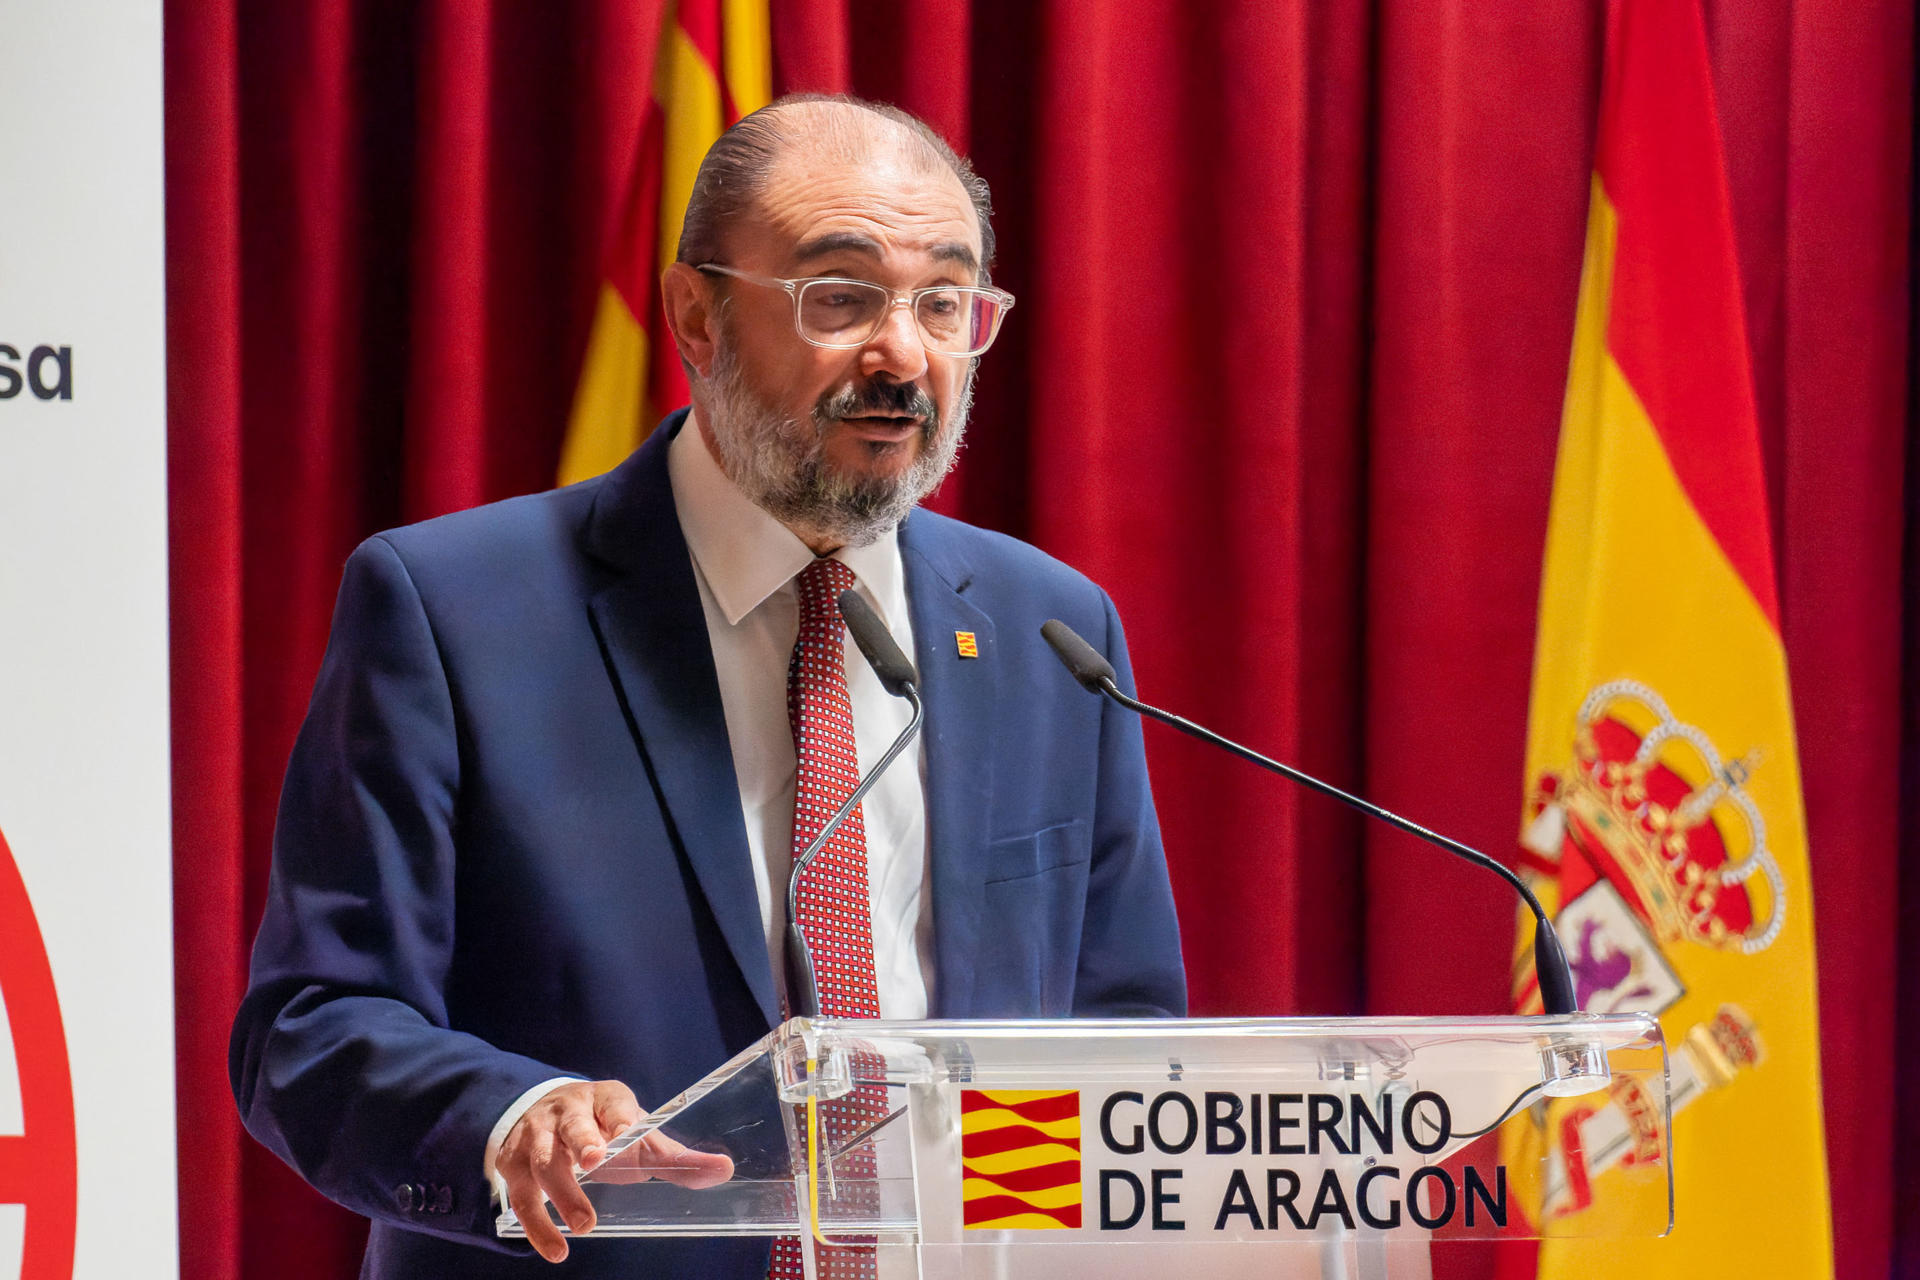 El presidente del gobierno de Aragón, Javier Lambán, en una imagen de archivo. EFE/Antonio García